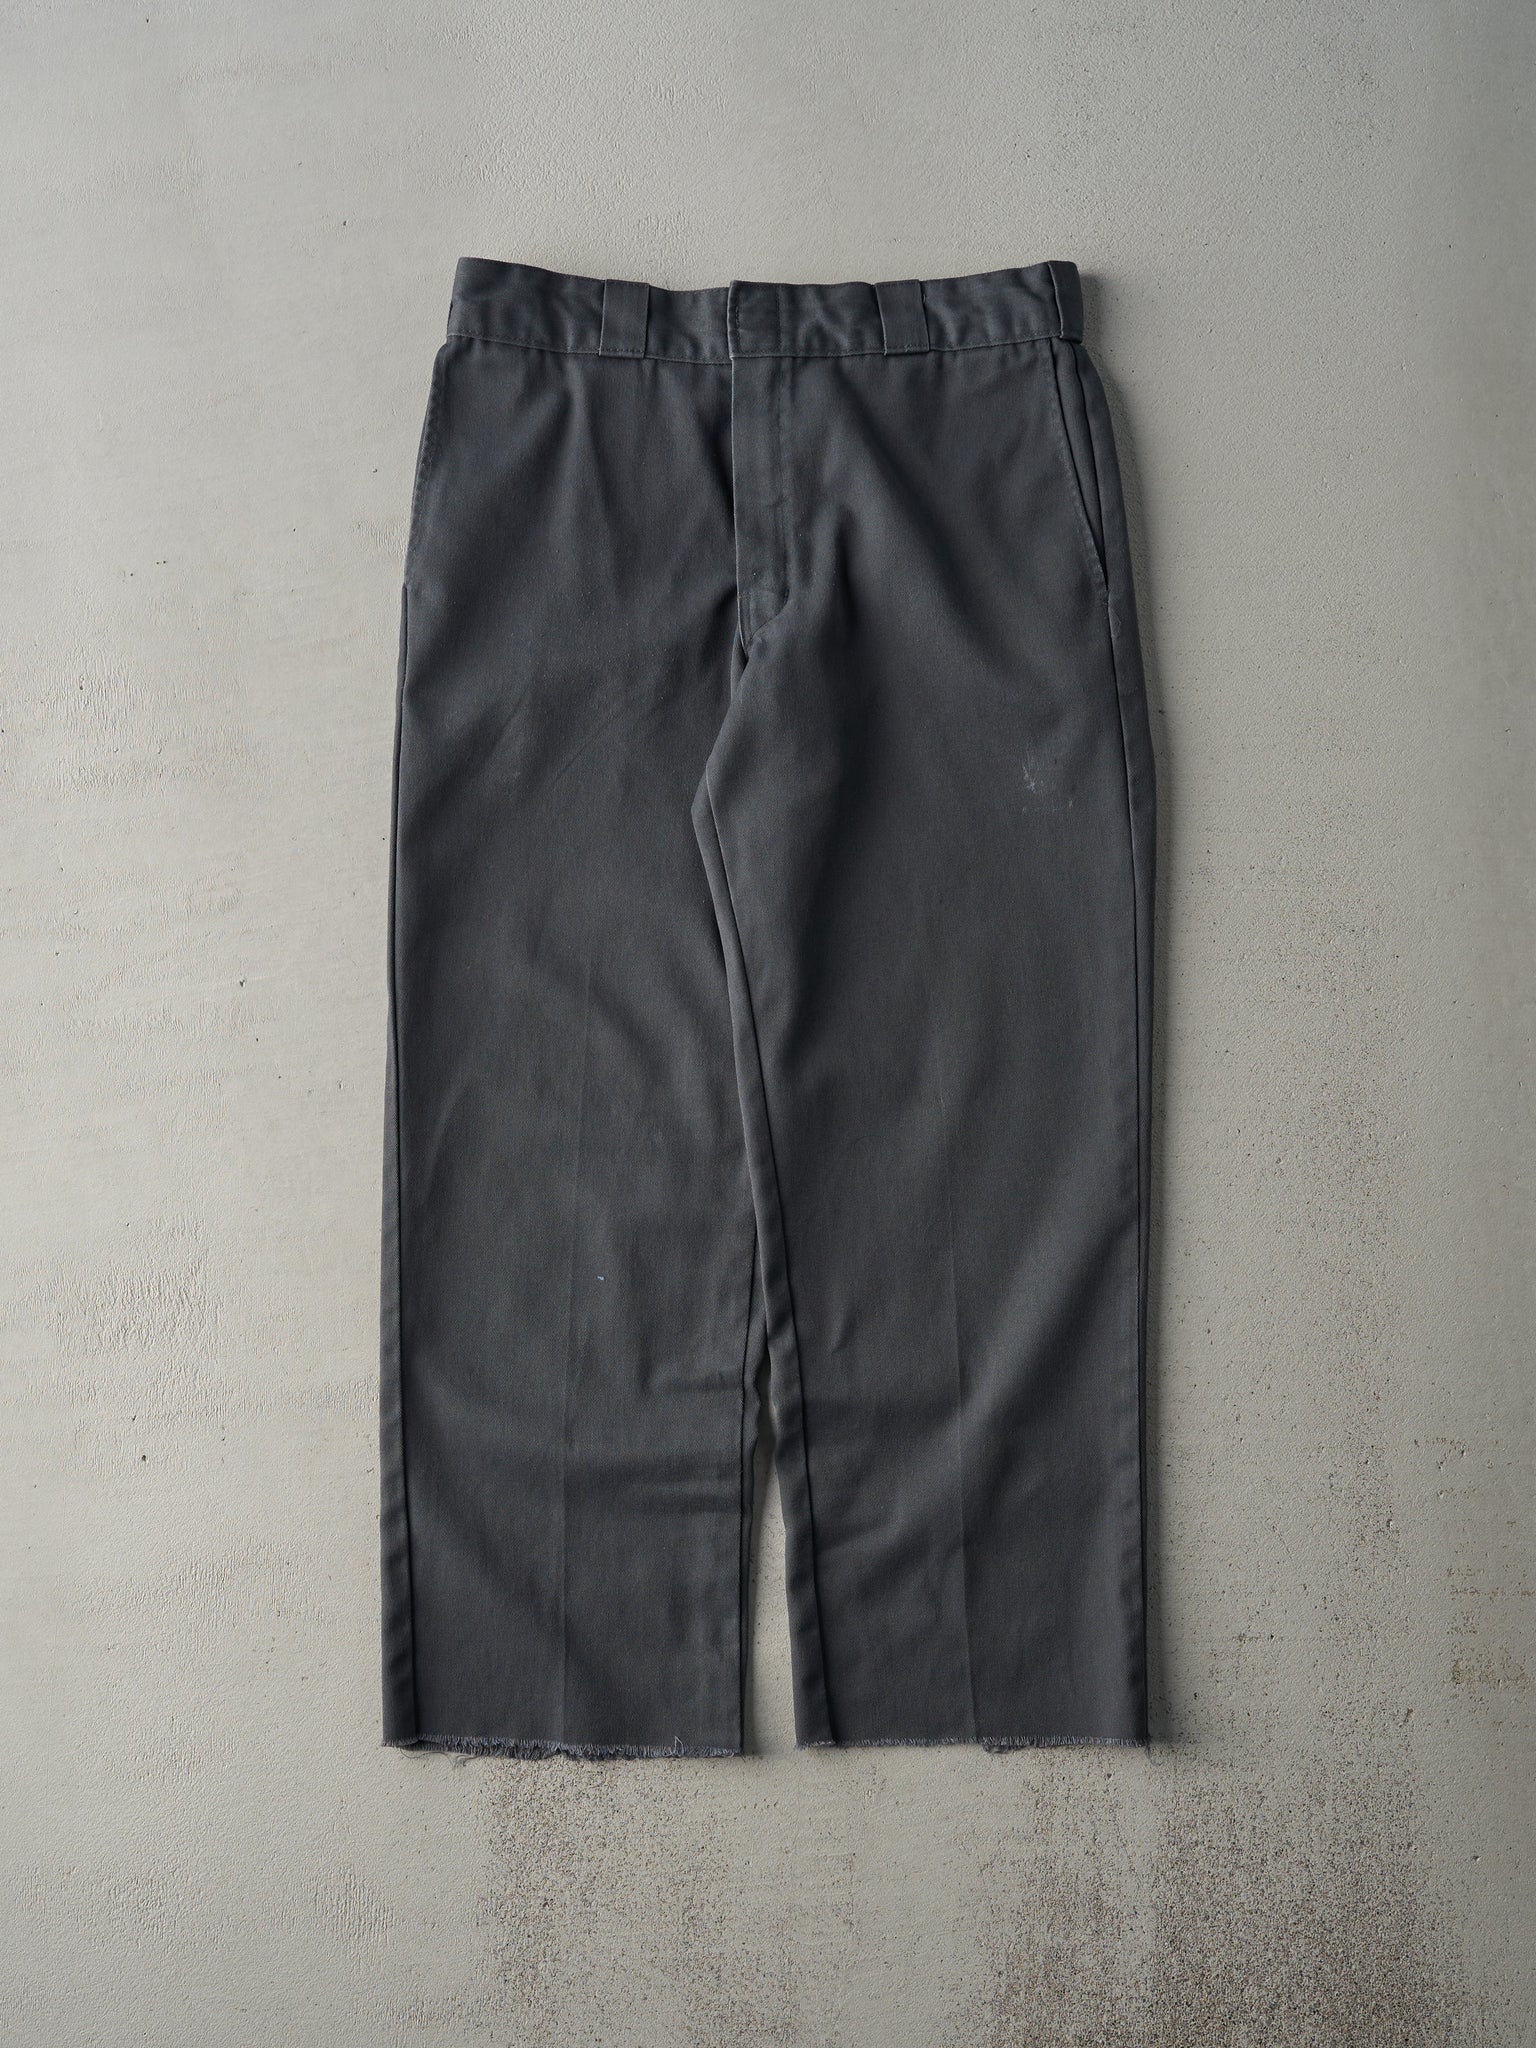 Vintage 90s Grey 874 Original Fit Dickies Work Pants (32x27)